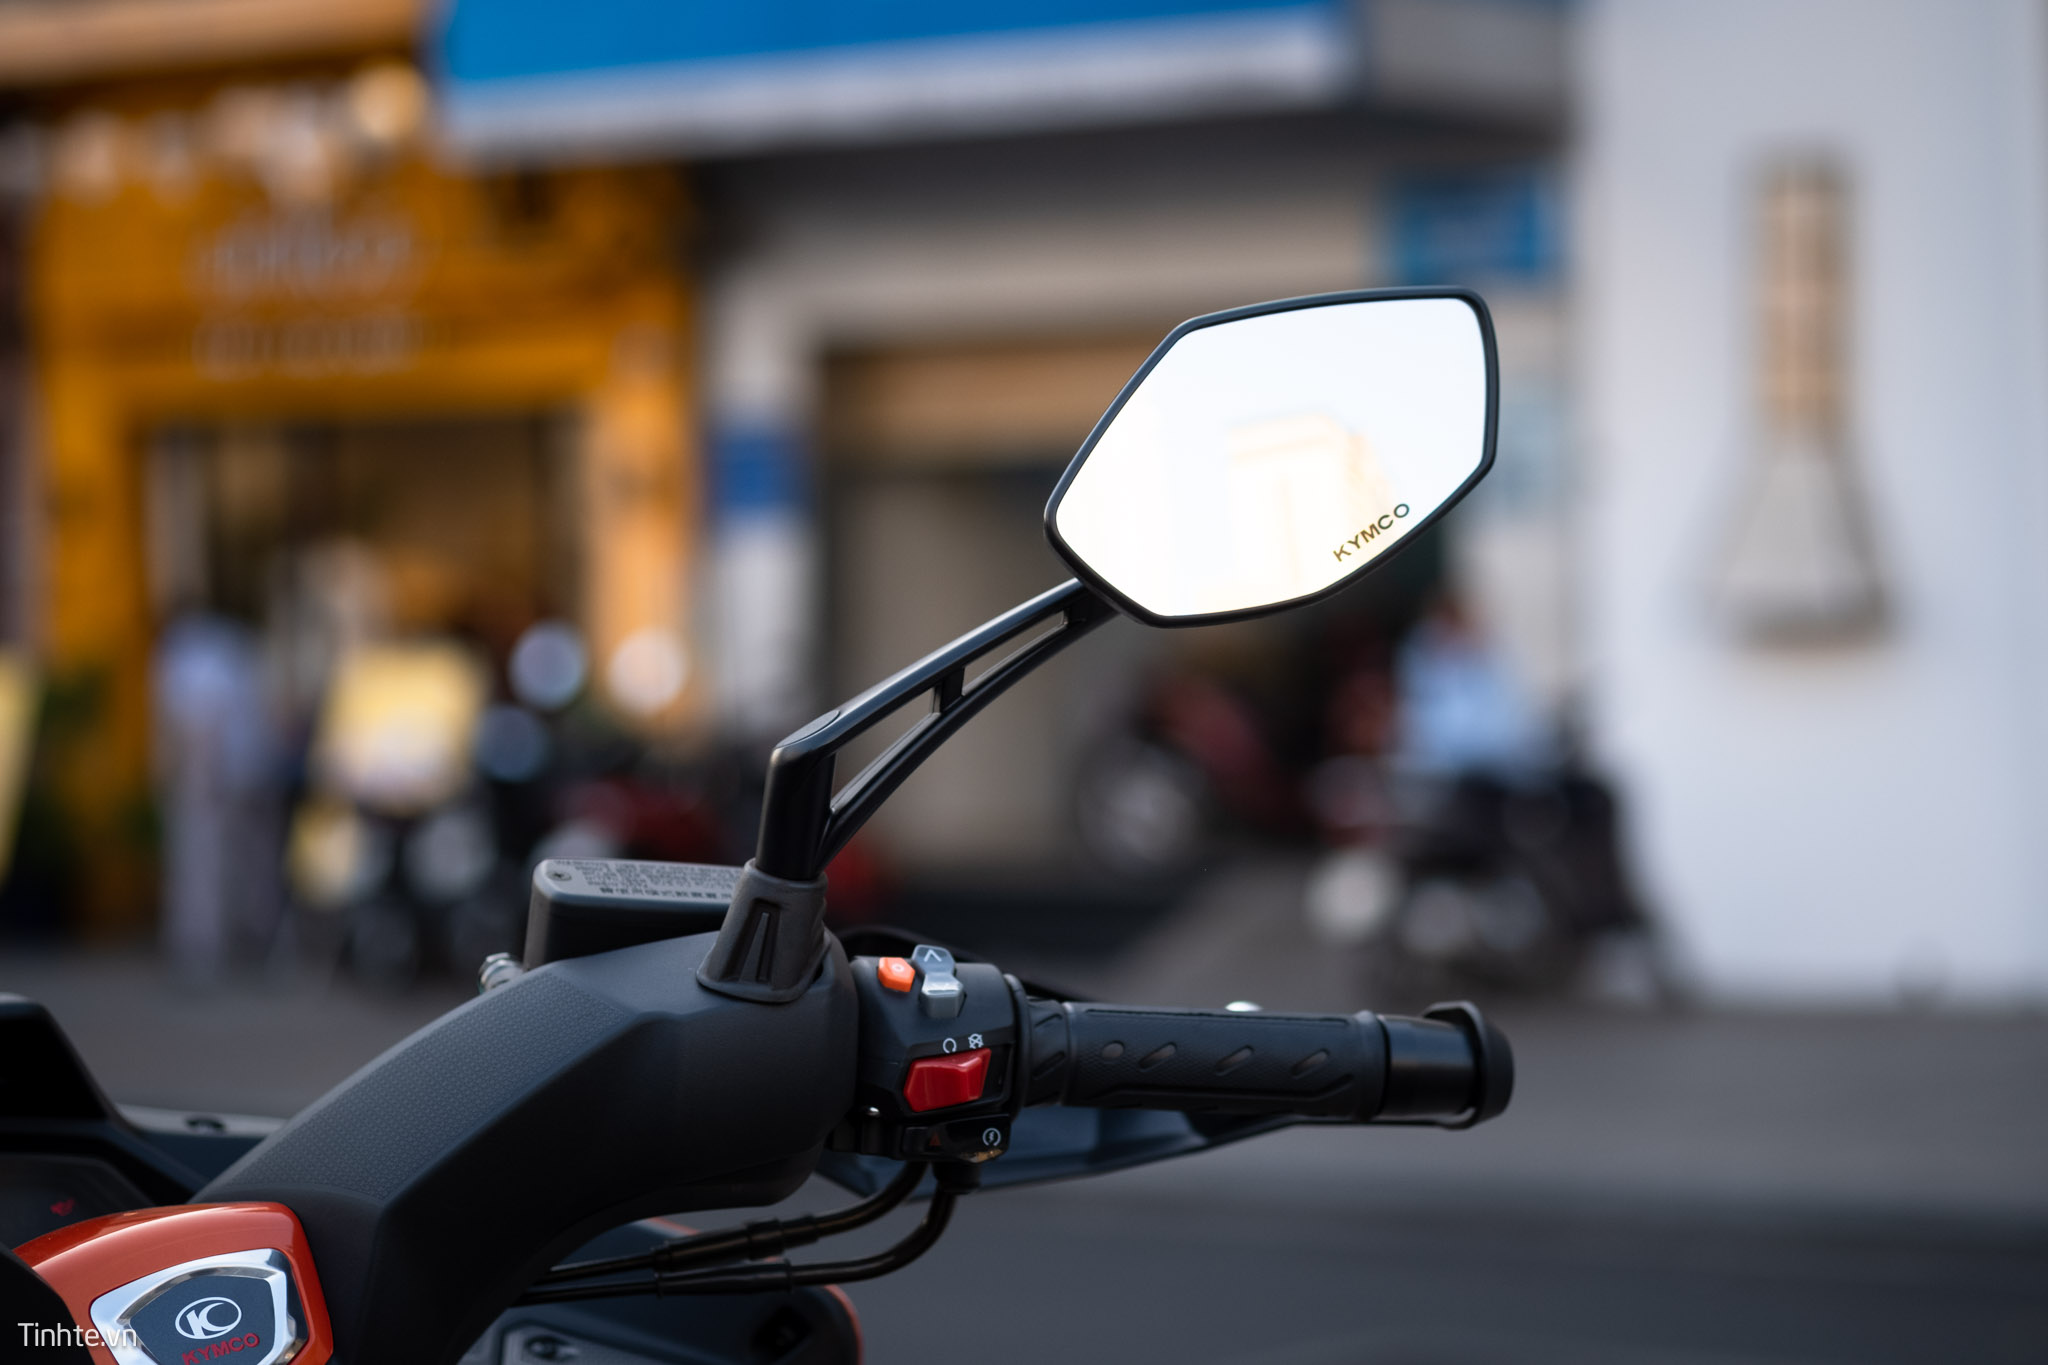 Chia sẻ: Cảm giác thiếu an toàn khi chạy xe máy mà không có gương chiếu hậu